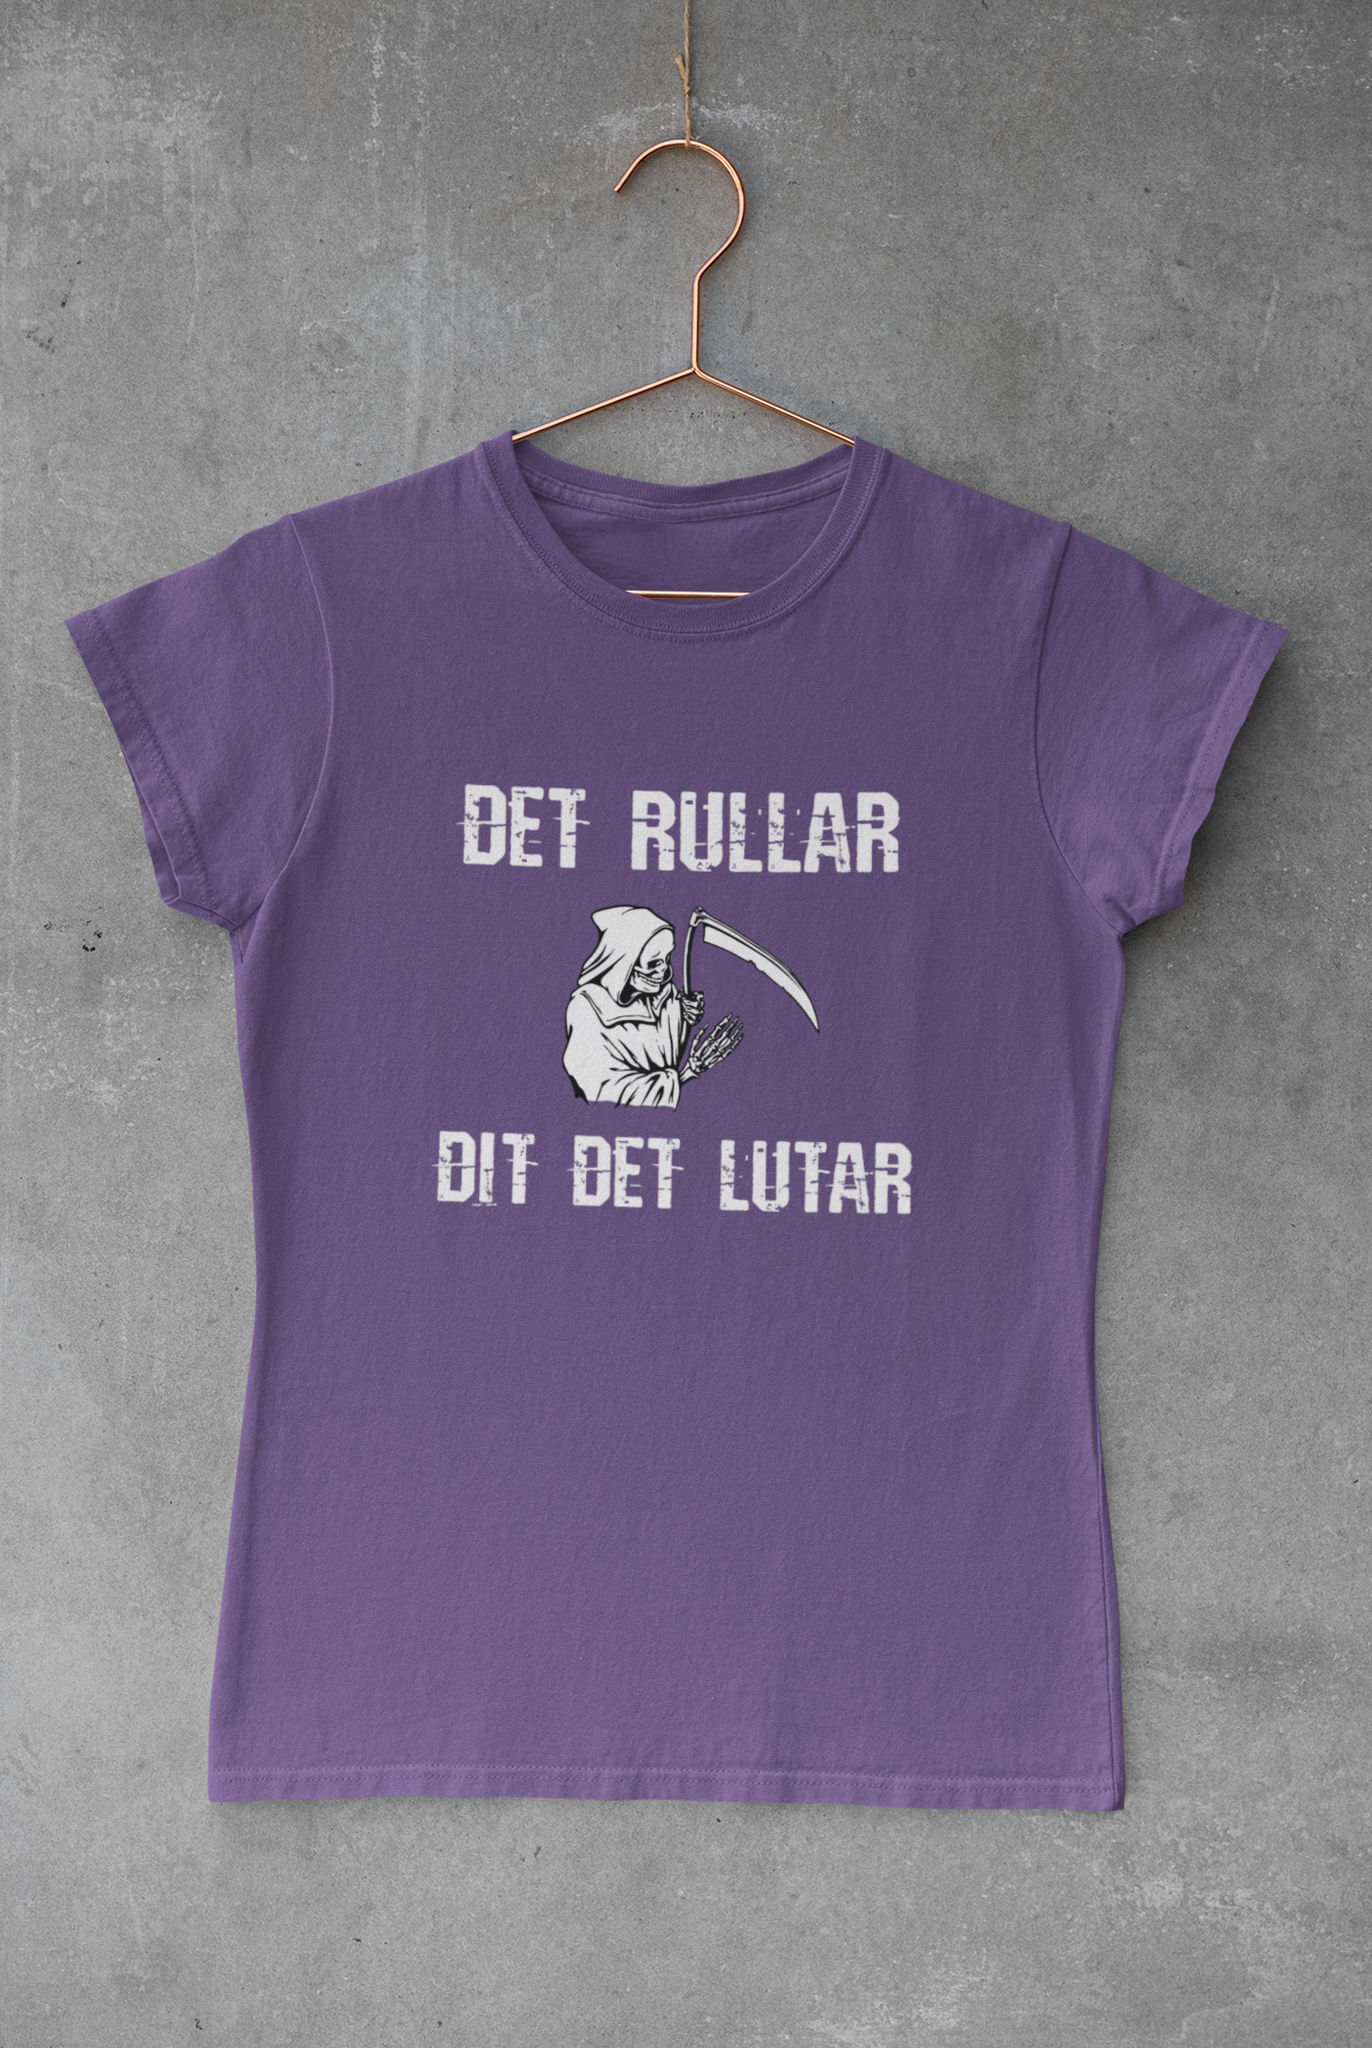 Dam T-Shirt,Det rullar dit det lutar, Carl Norberg Partiet de fria, De Fria i Sverige